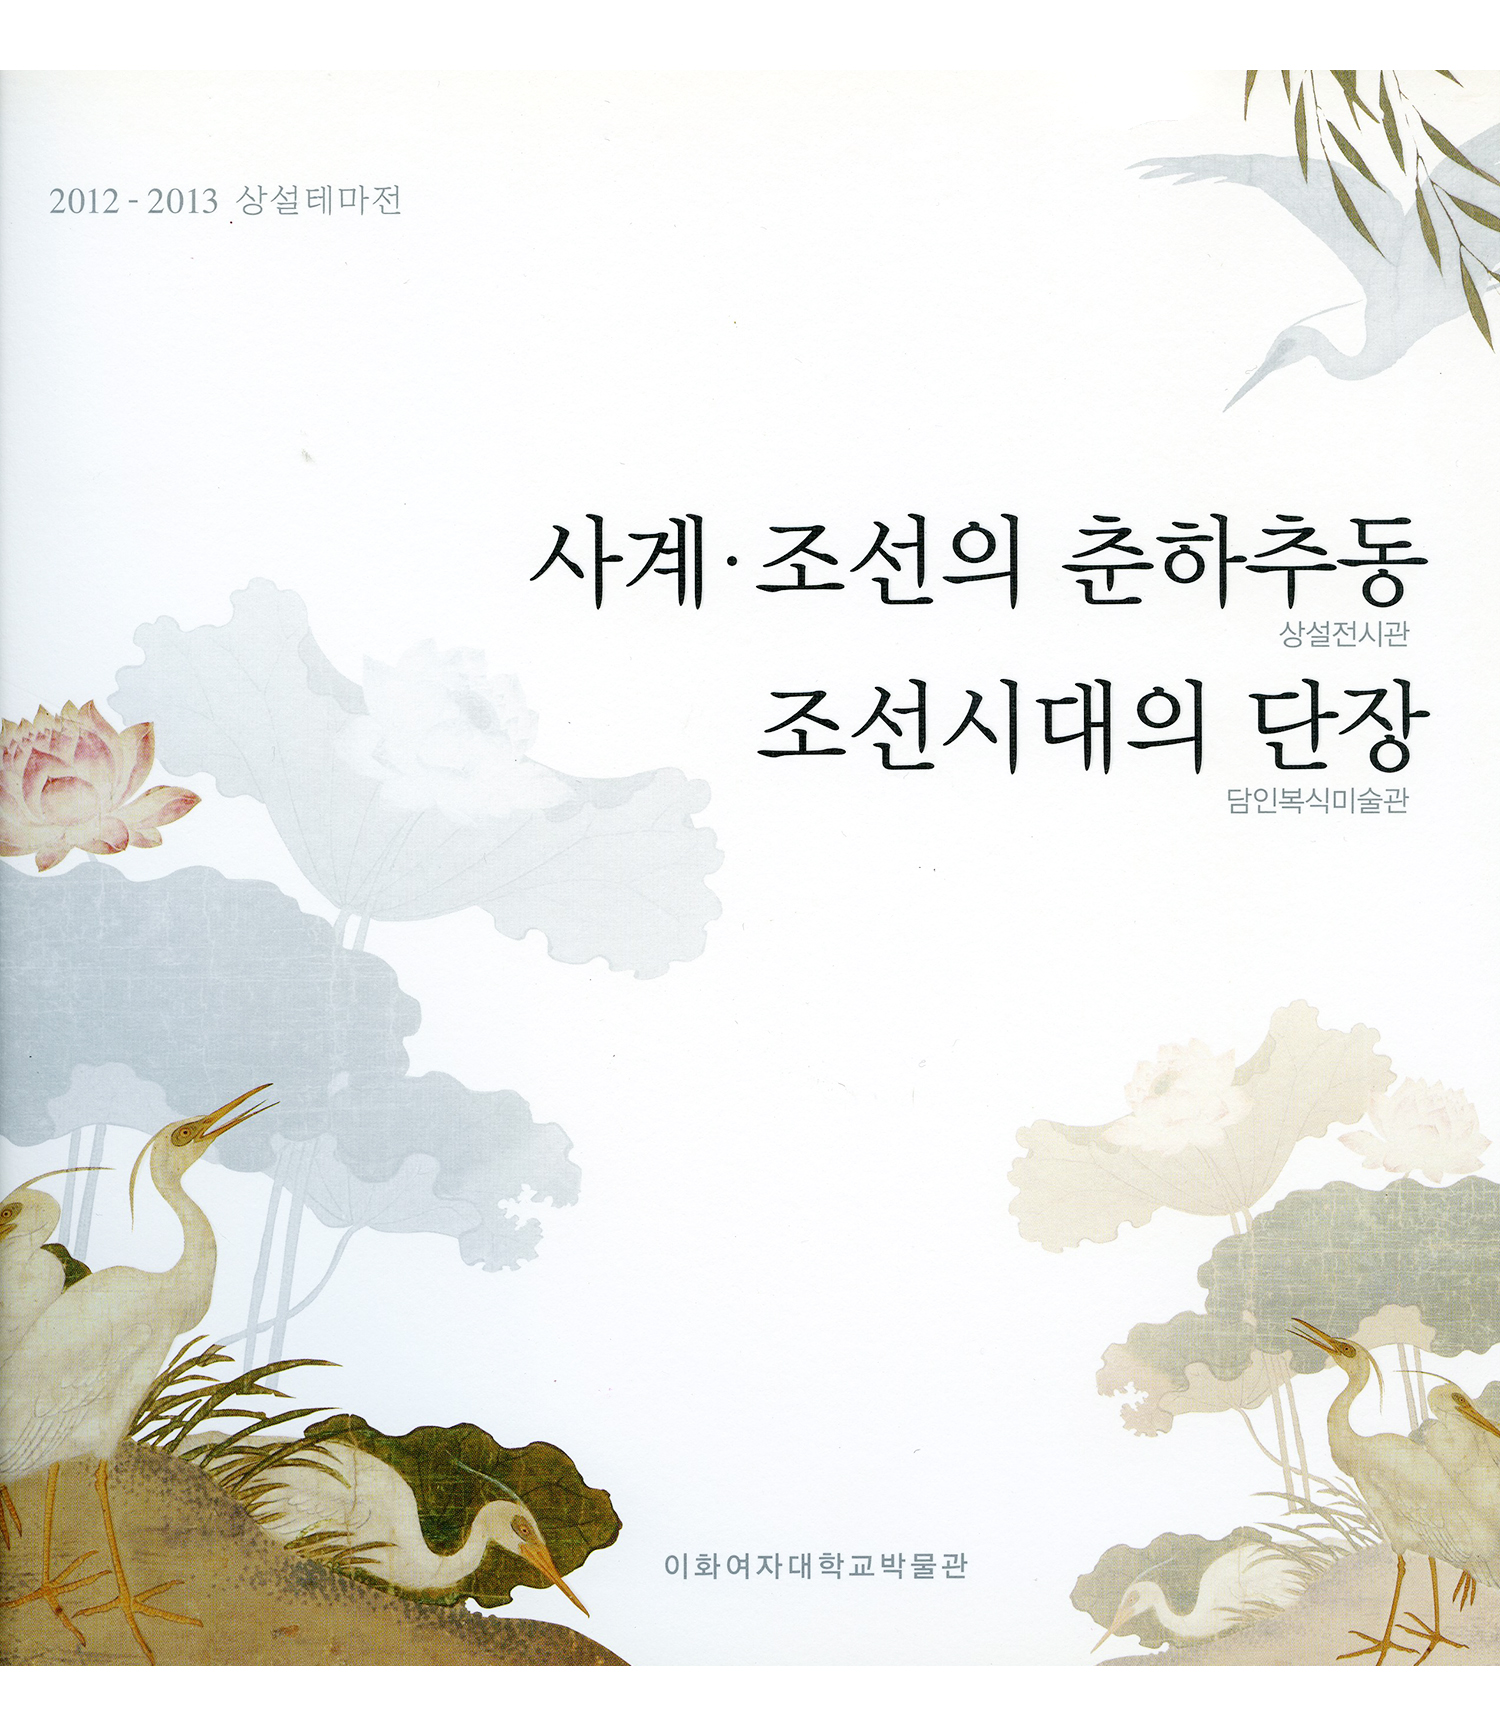 Four Seasons in Joseon / Dress and Grooming in Joseon Dynasty